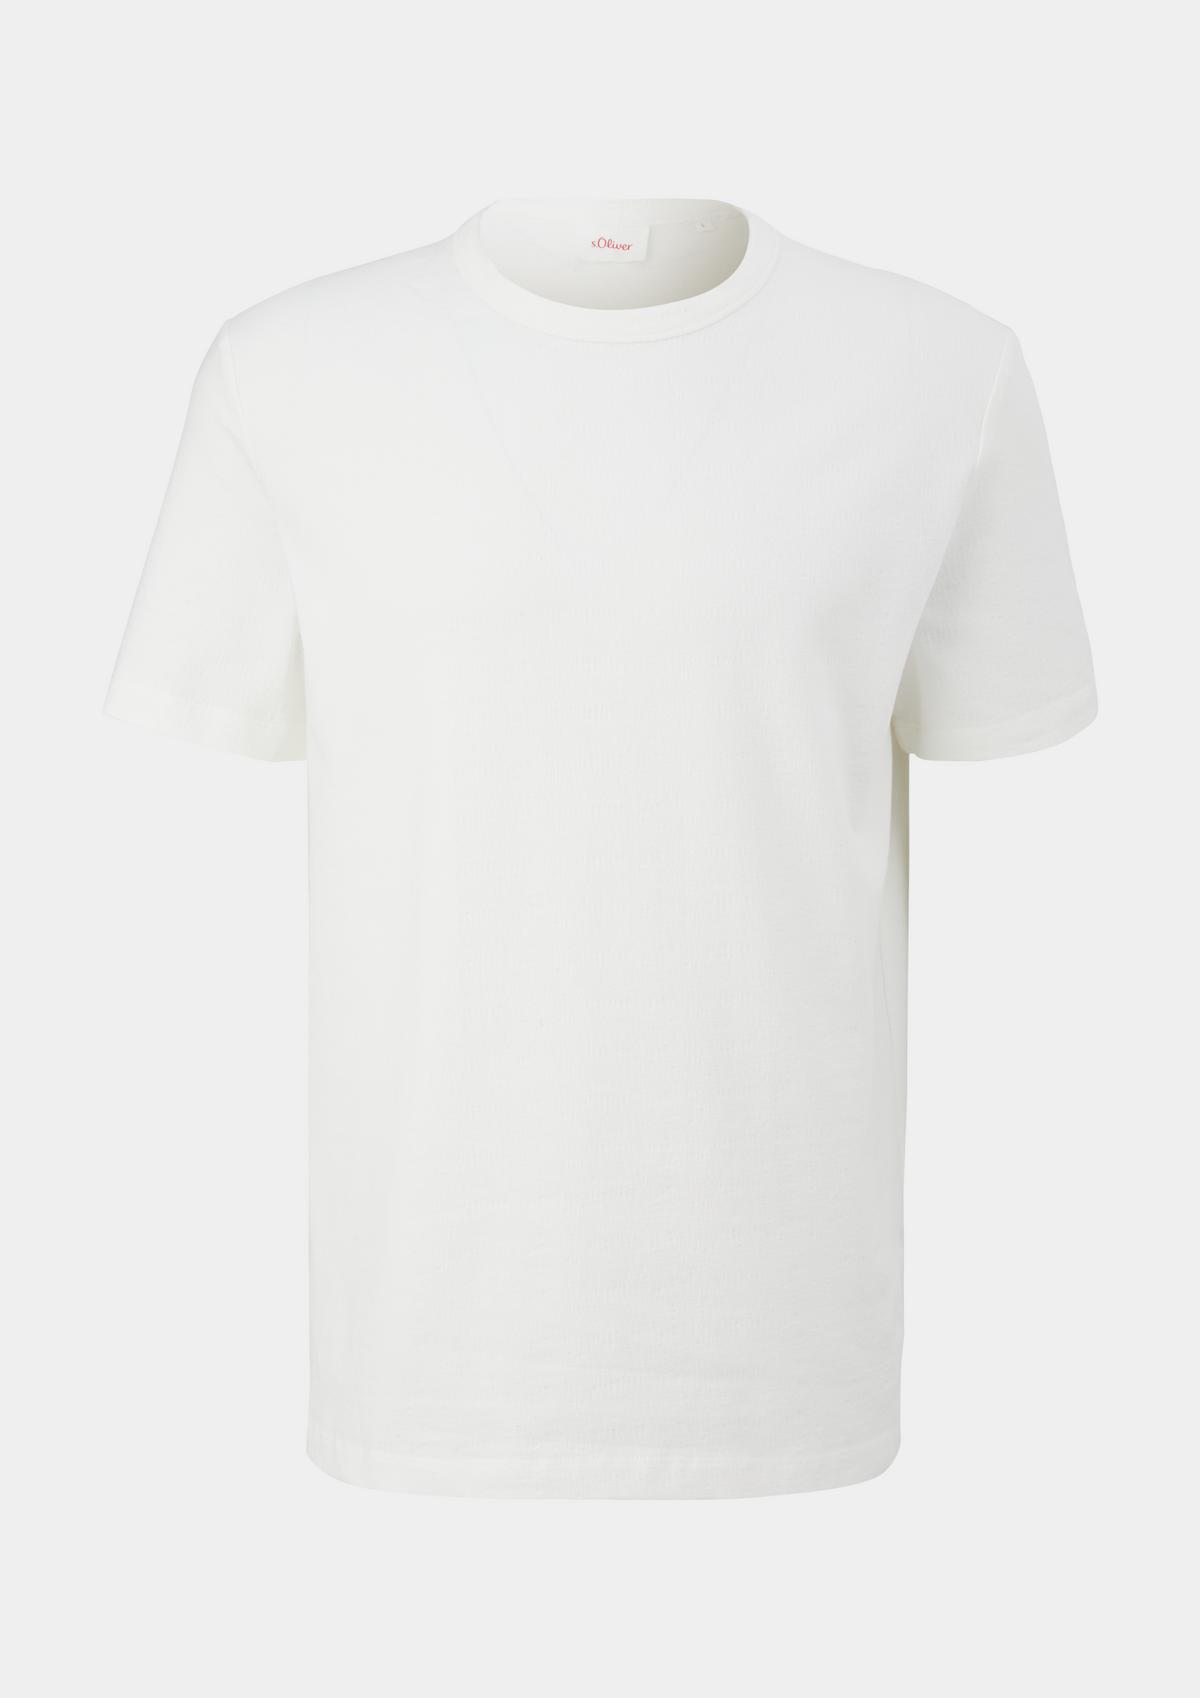 - T-shirt white Seersucker